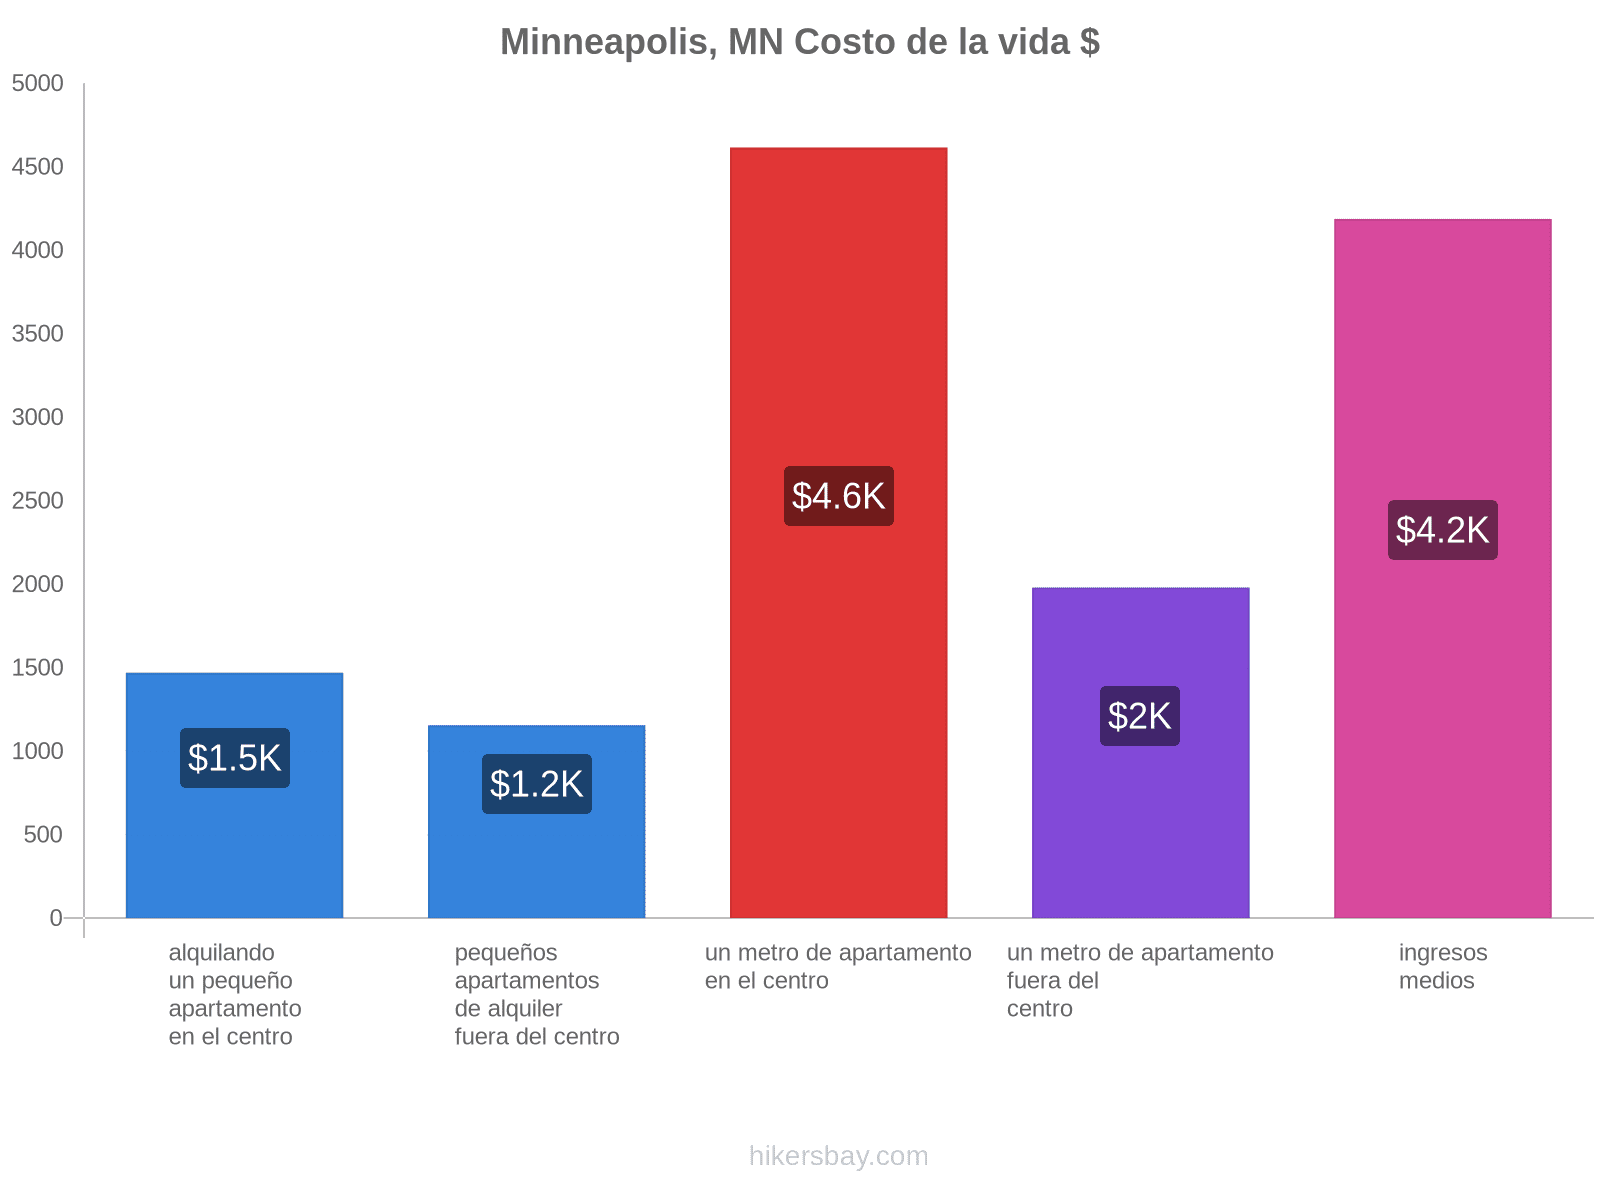 Minneapolis, MN costo de la vida hikersbay.com